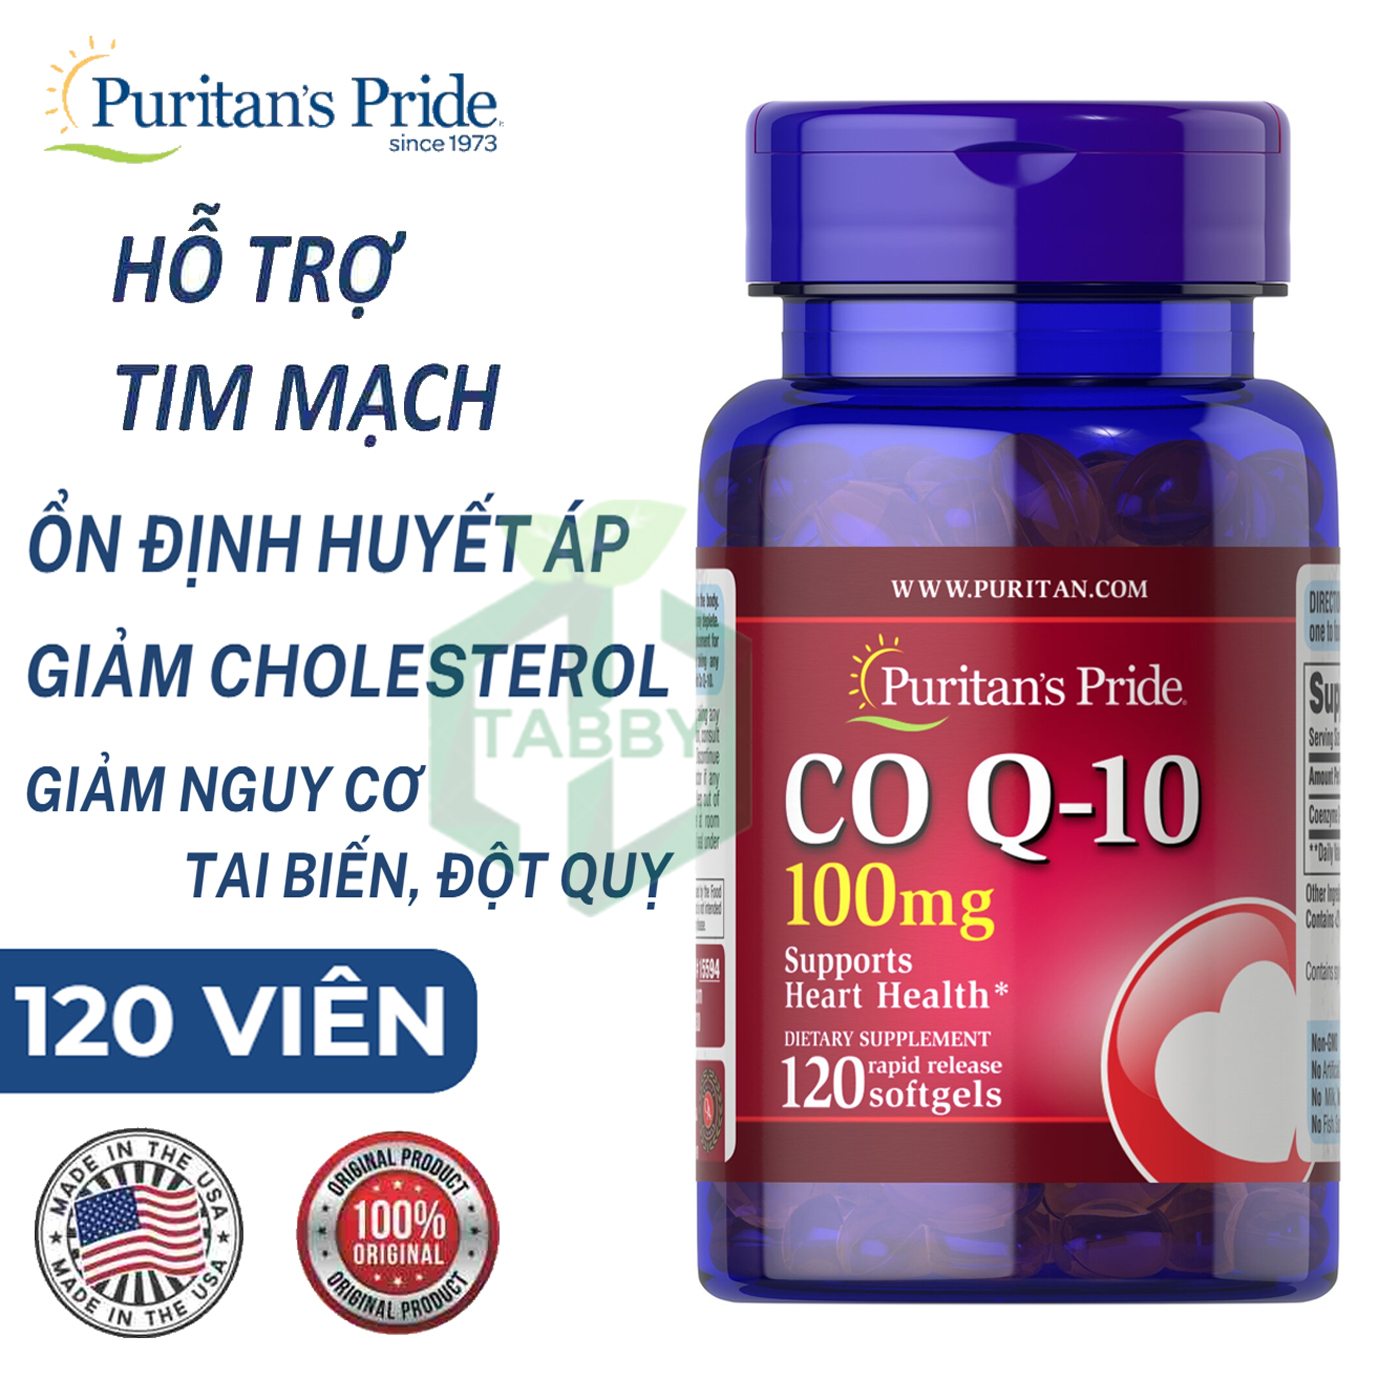 Viên uống hỗ trợ tim mạch, giảm cholesterol Puritans pride Co Q10 100mg